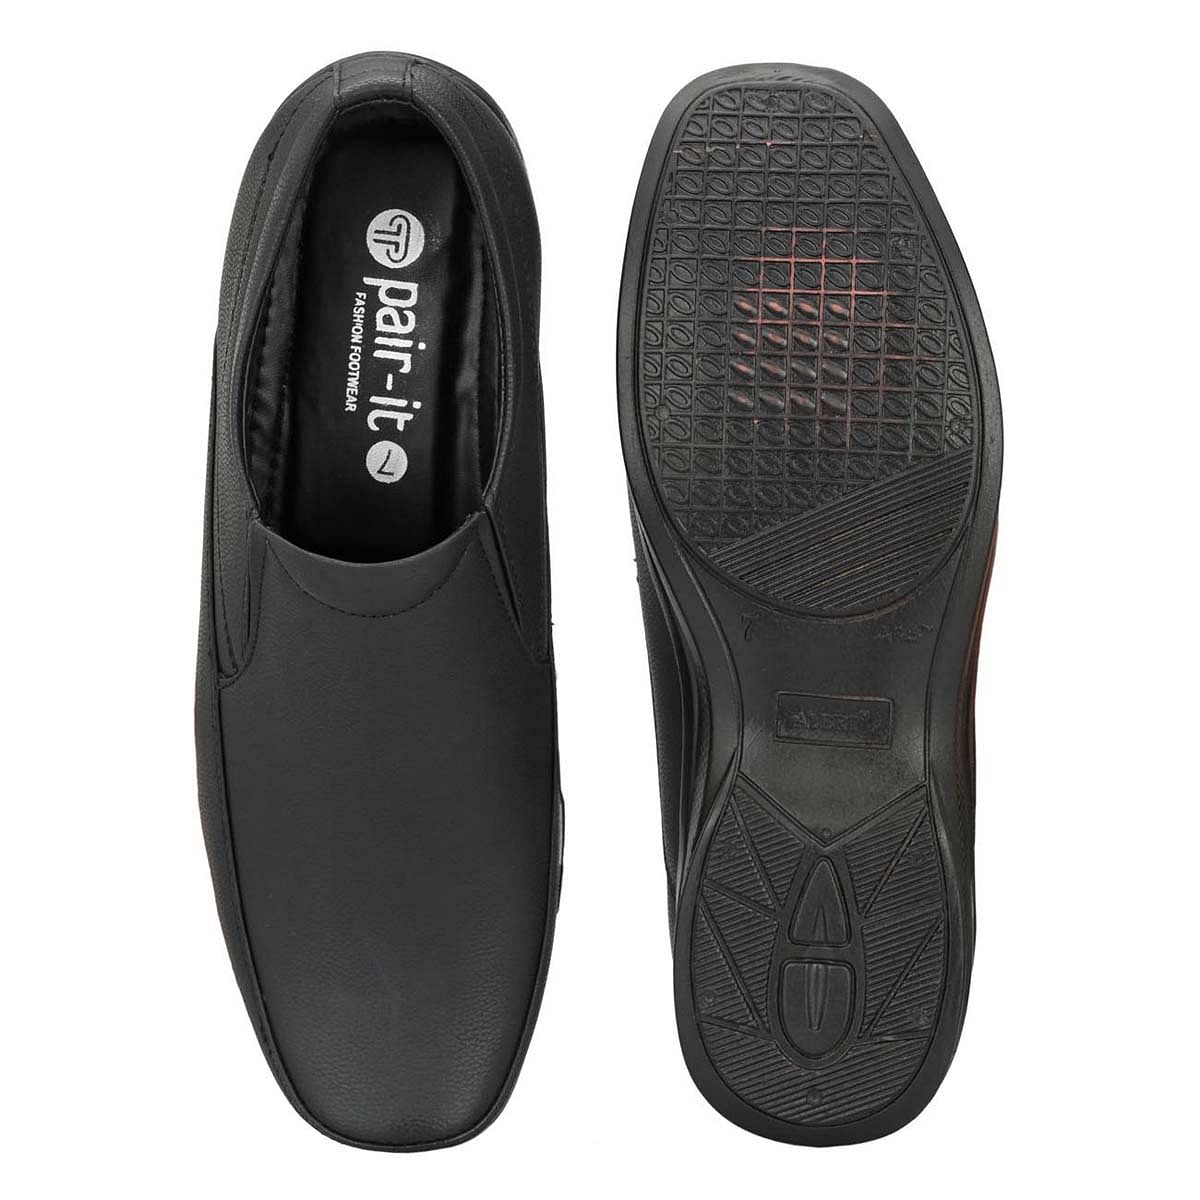 Pair-it Men moccasin Formal Shoes - Black-MN-RYDER206